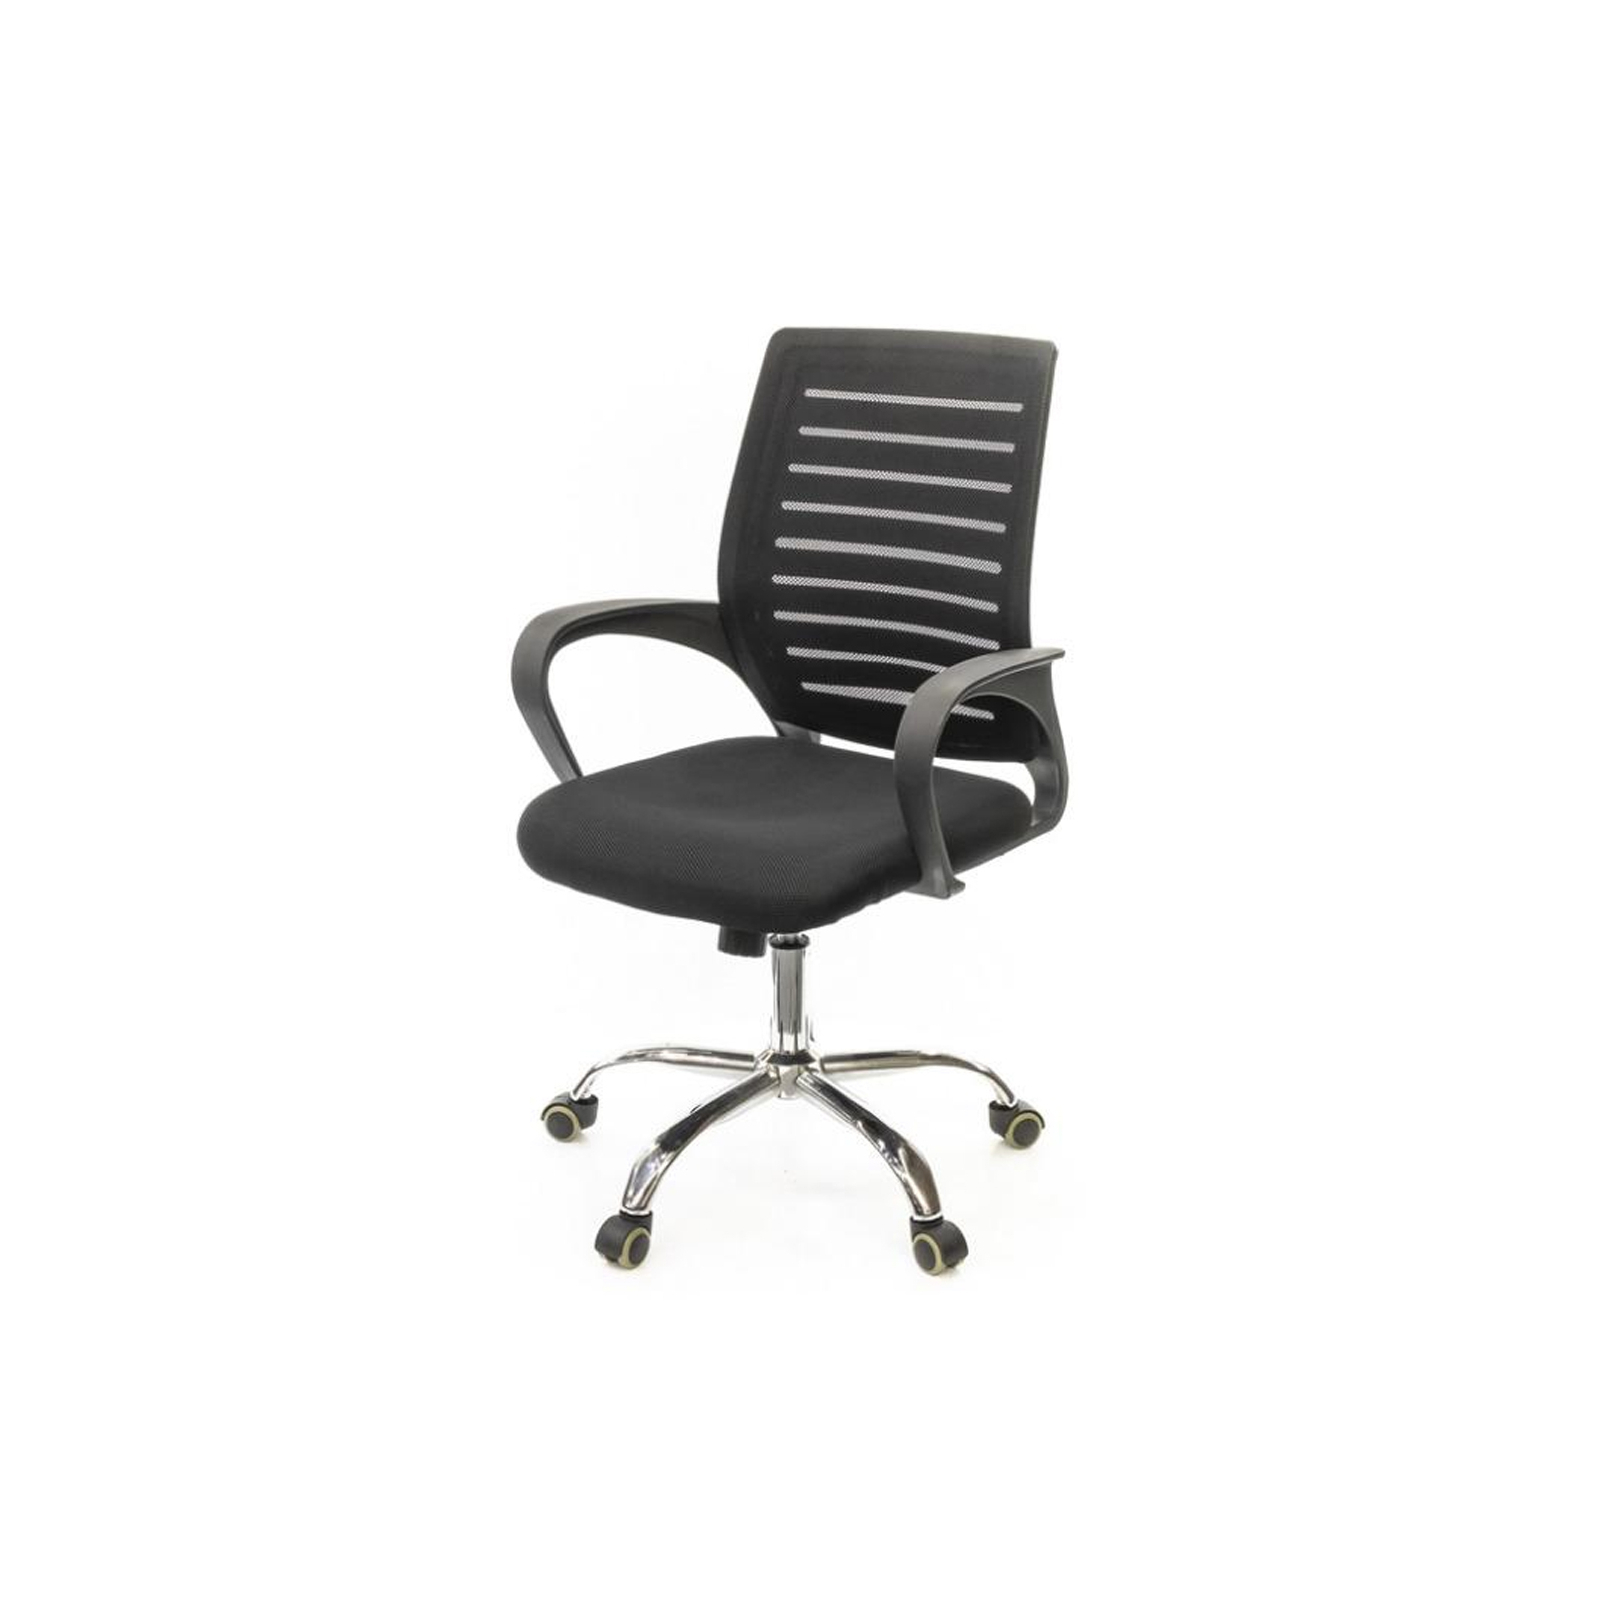 Офисное кресло Аклас Фиджи NEW CH TILT Черное (00054)